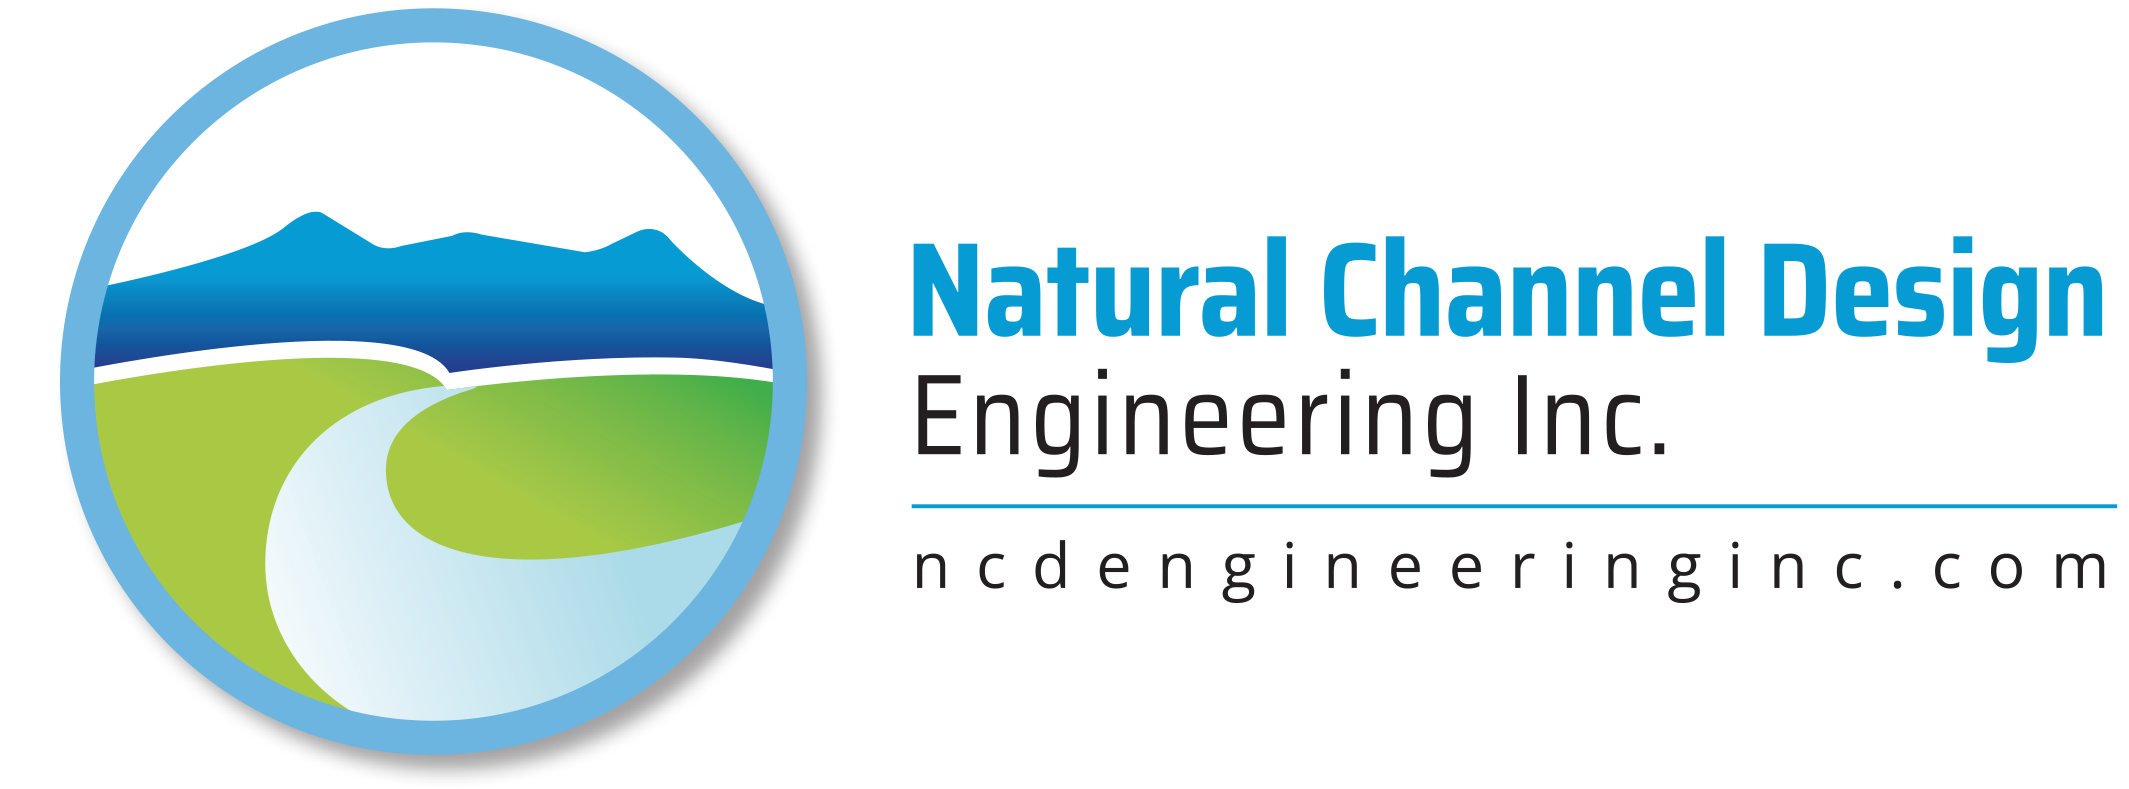 Natural Channel Design Logo